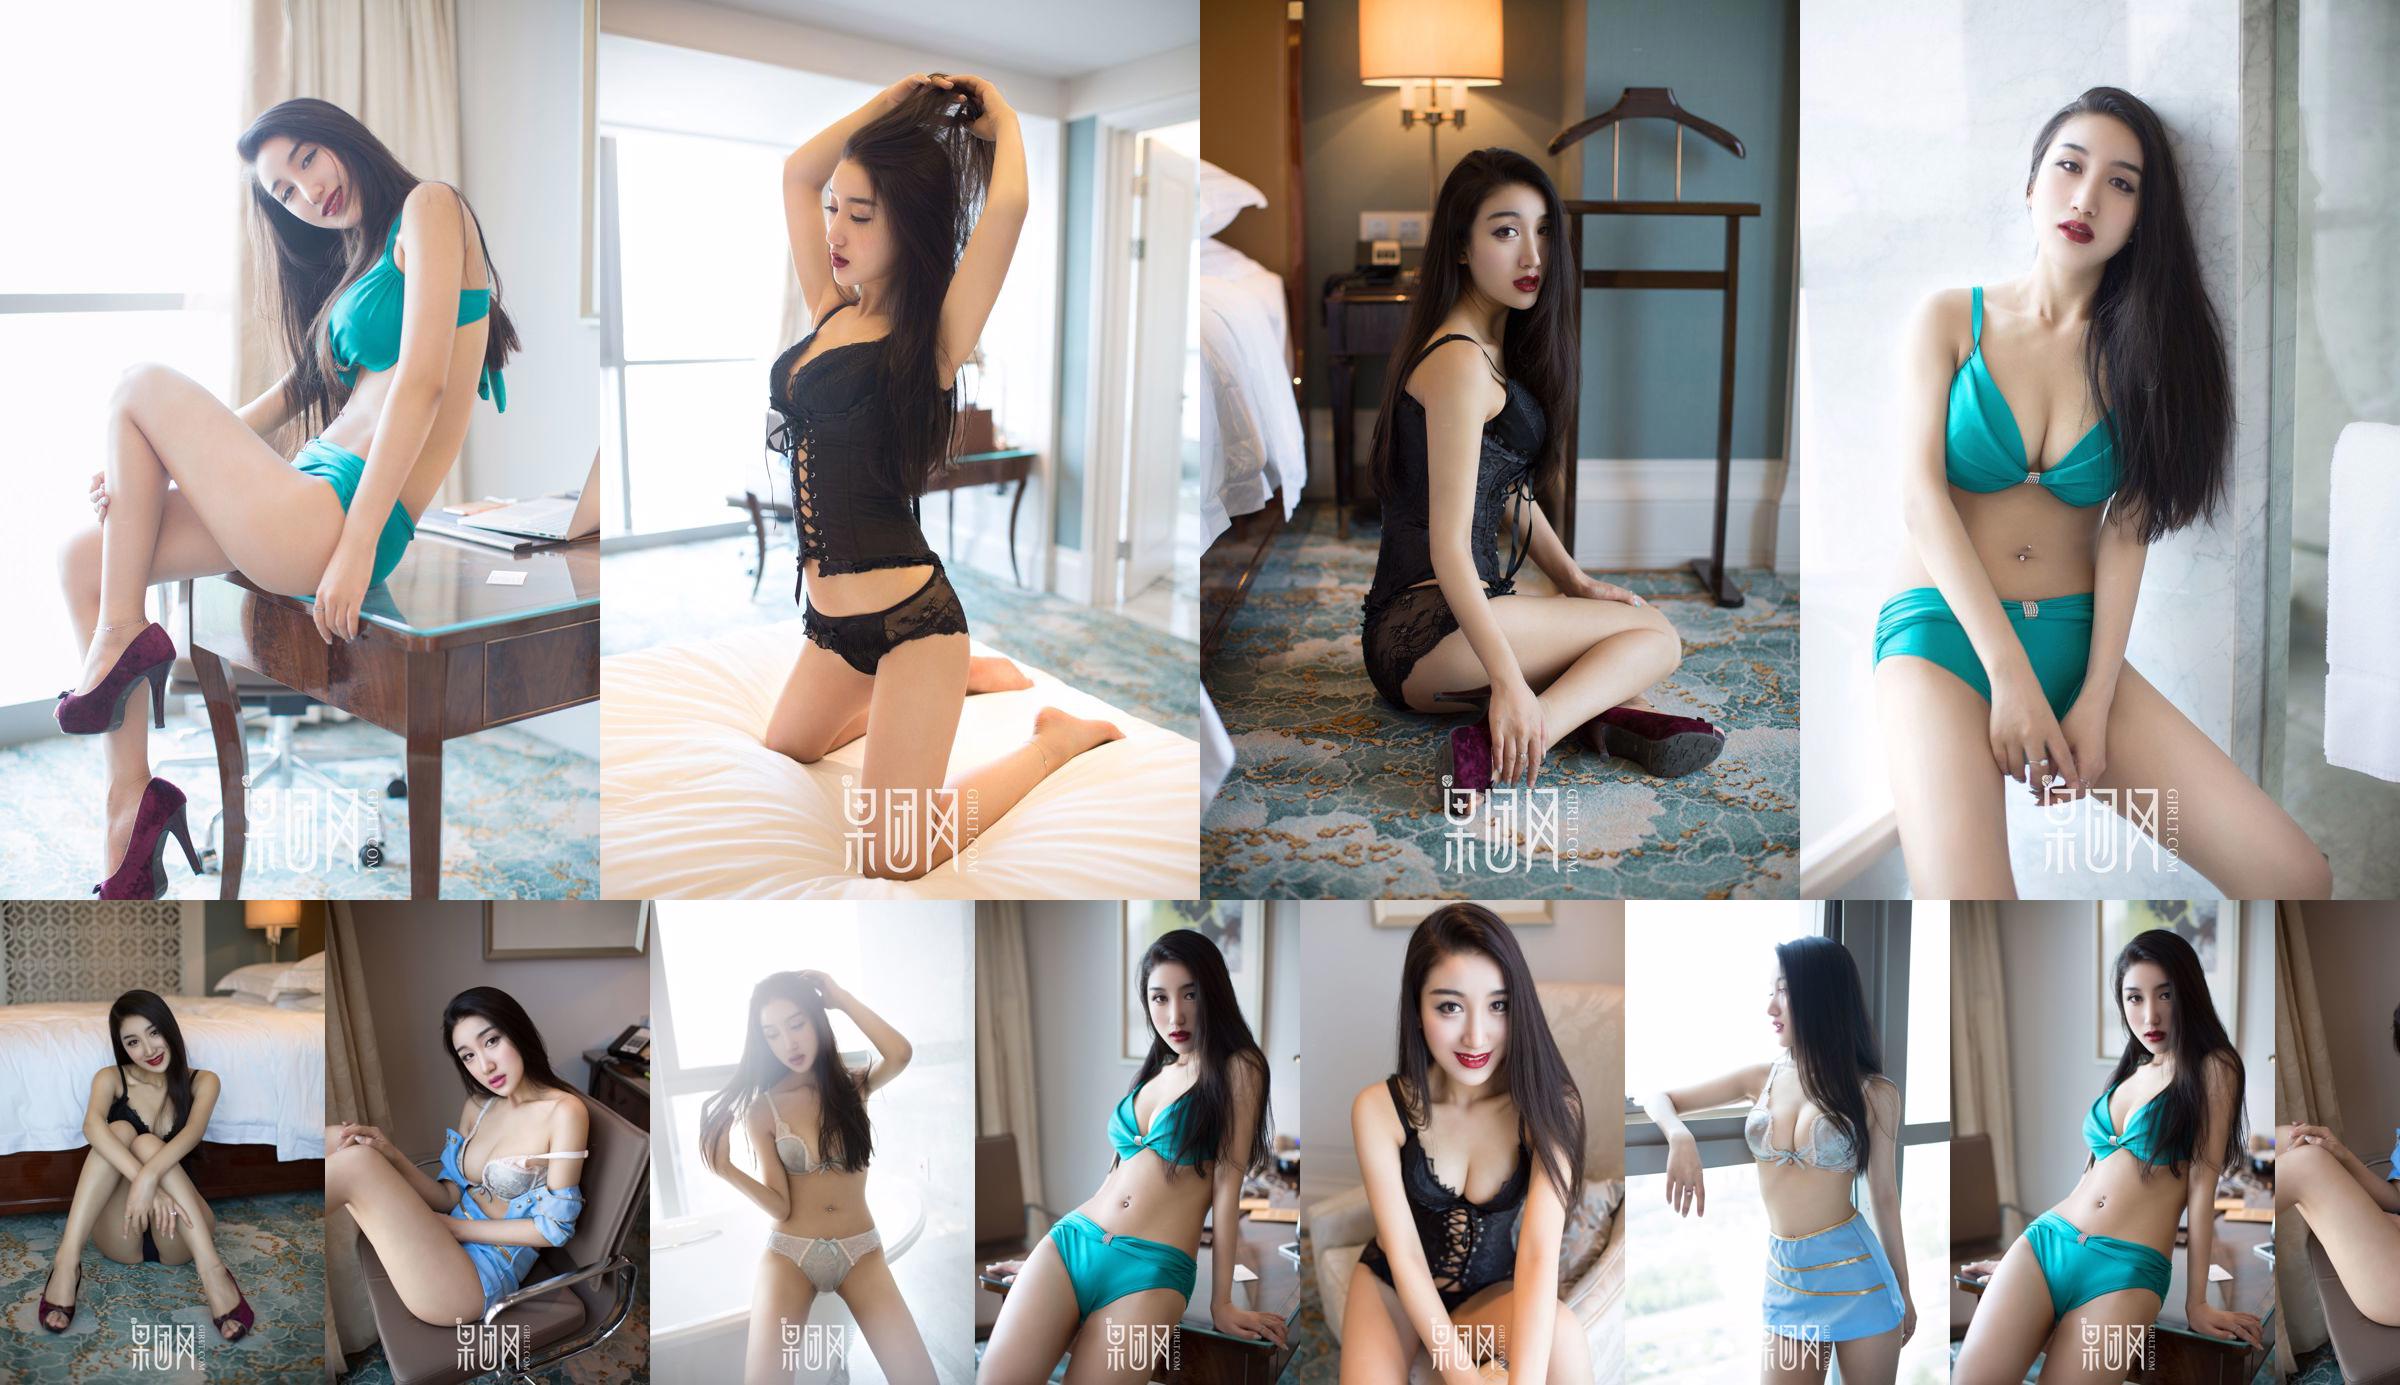 Wang Zheng "Vent chaud sexy" [Girlt] No.050 No.8f54ec Page 3